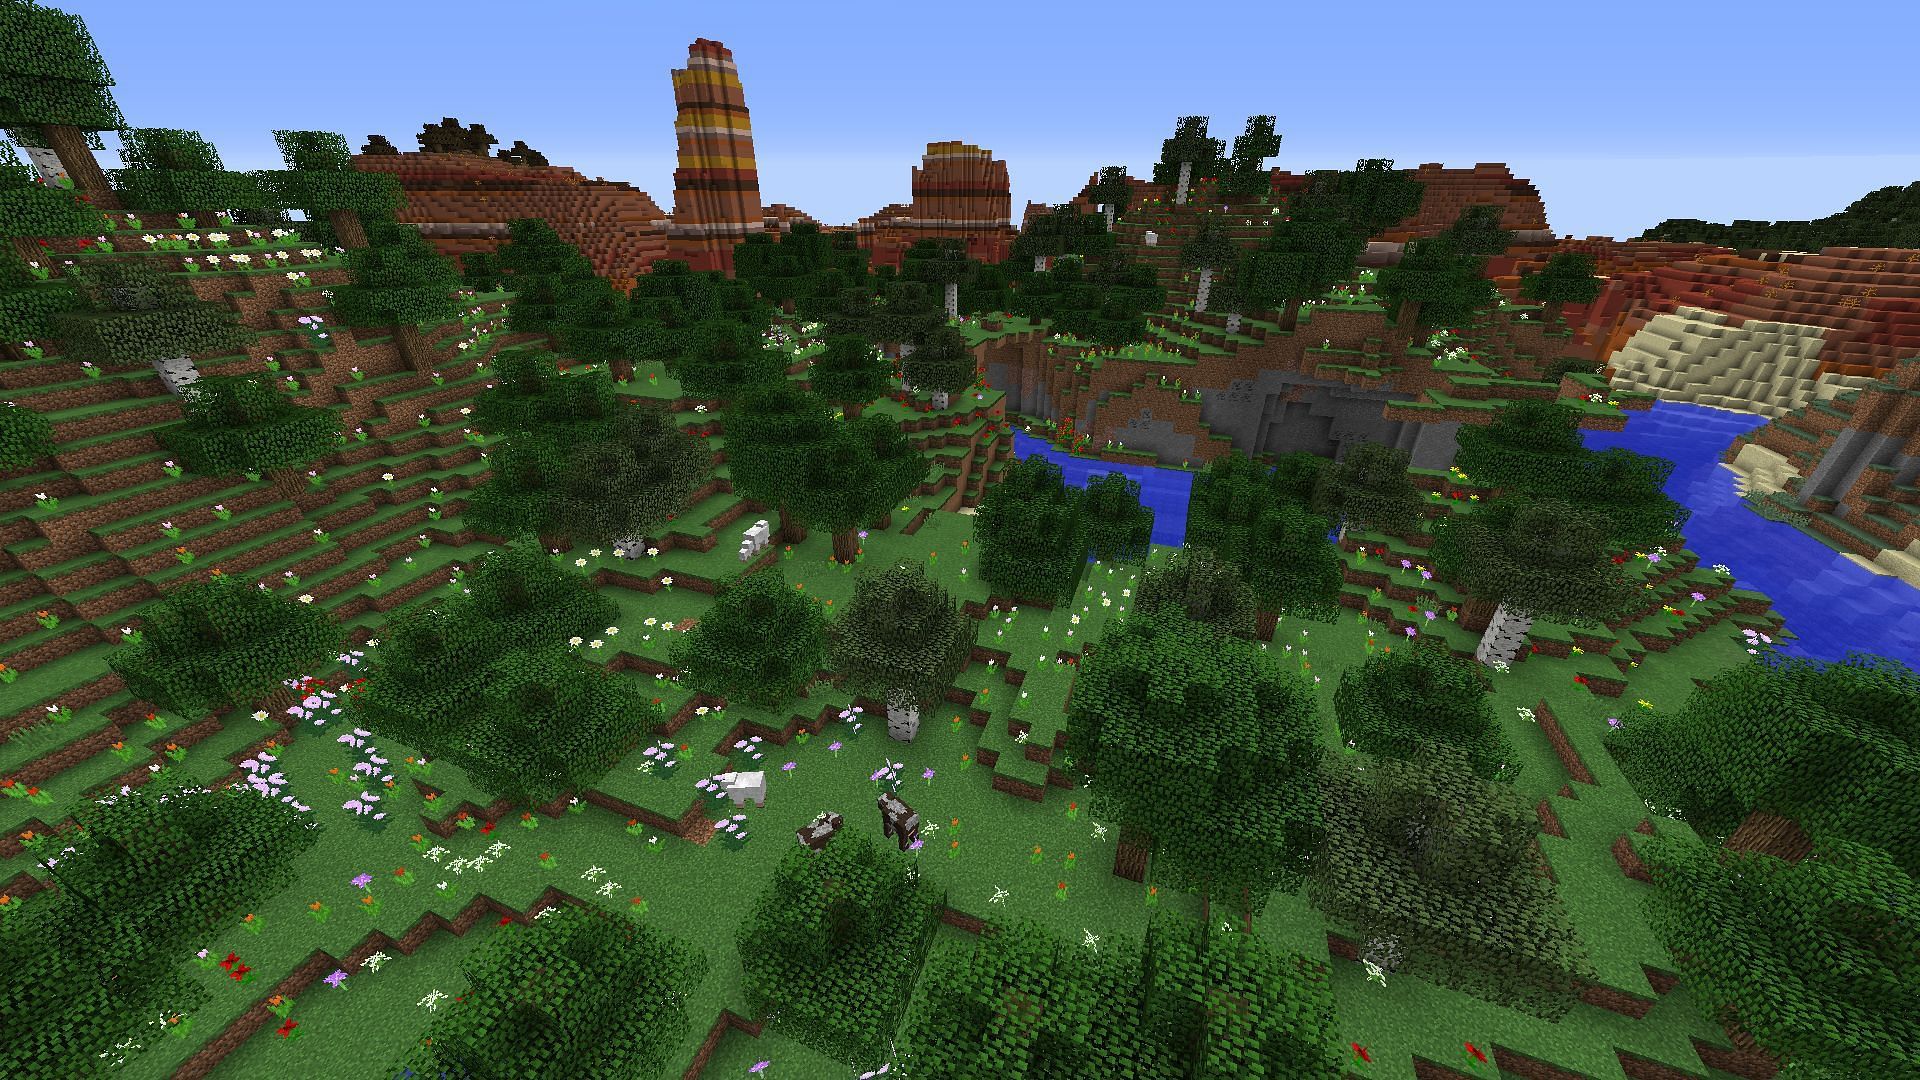 Flower forest (Image via Minecraft Forum)